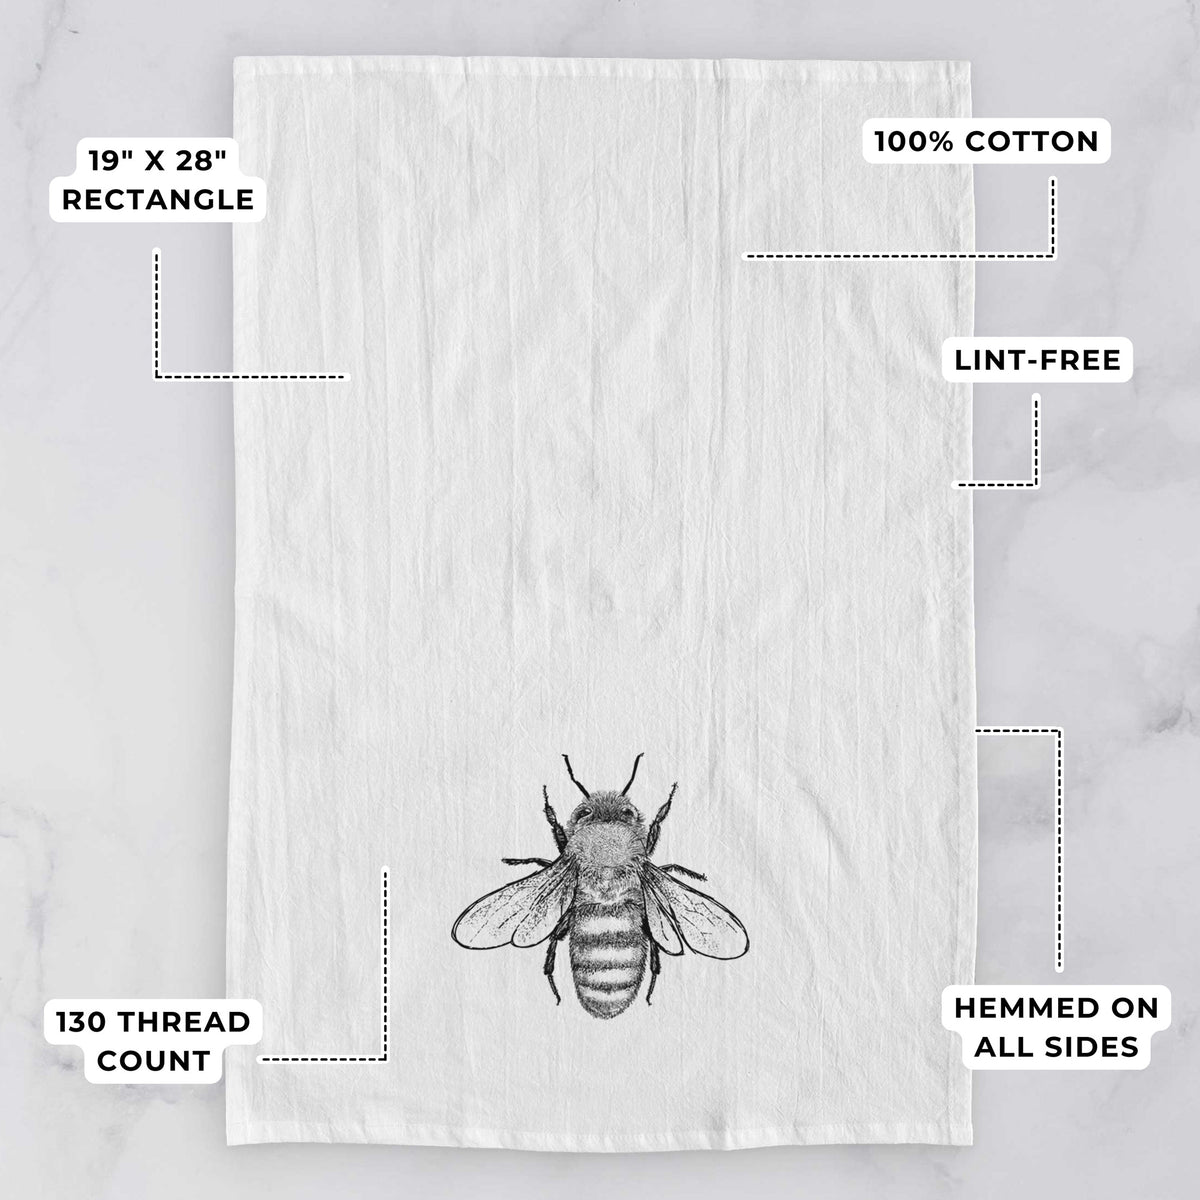 Apis Mellifera - Honey Bee Tea Towel